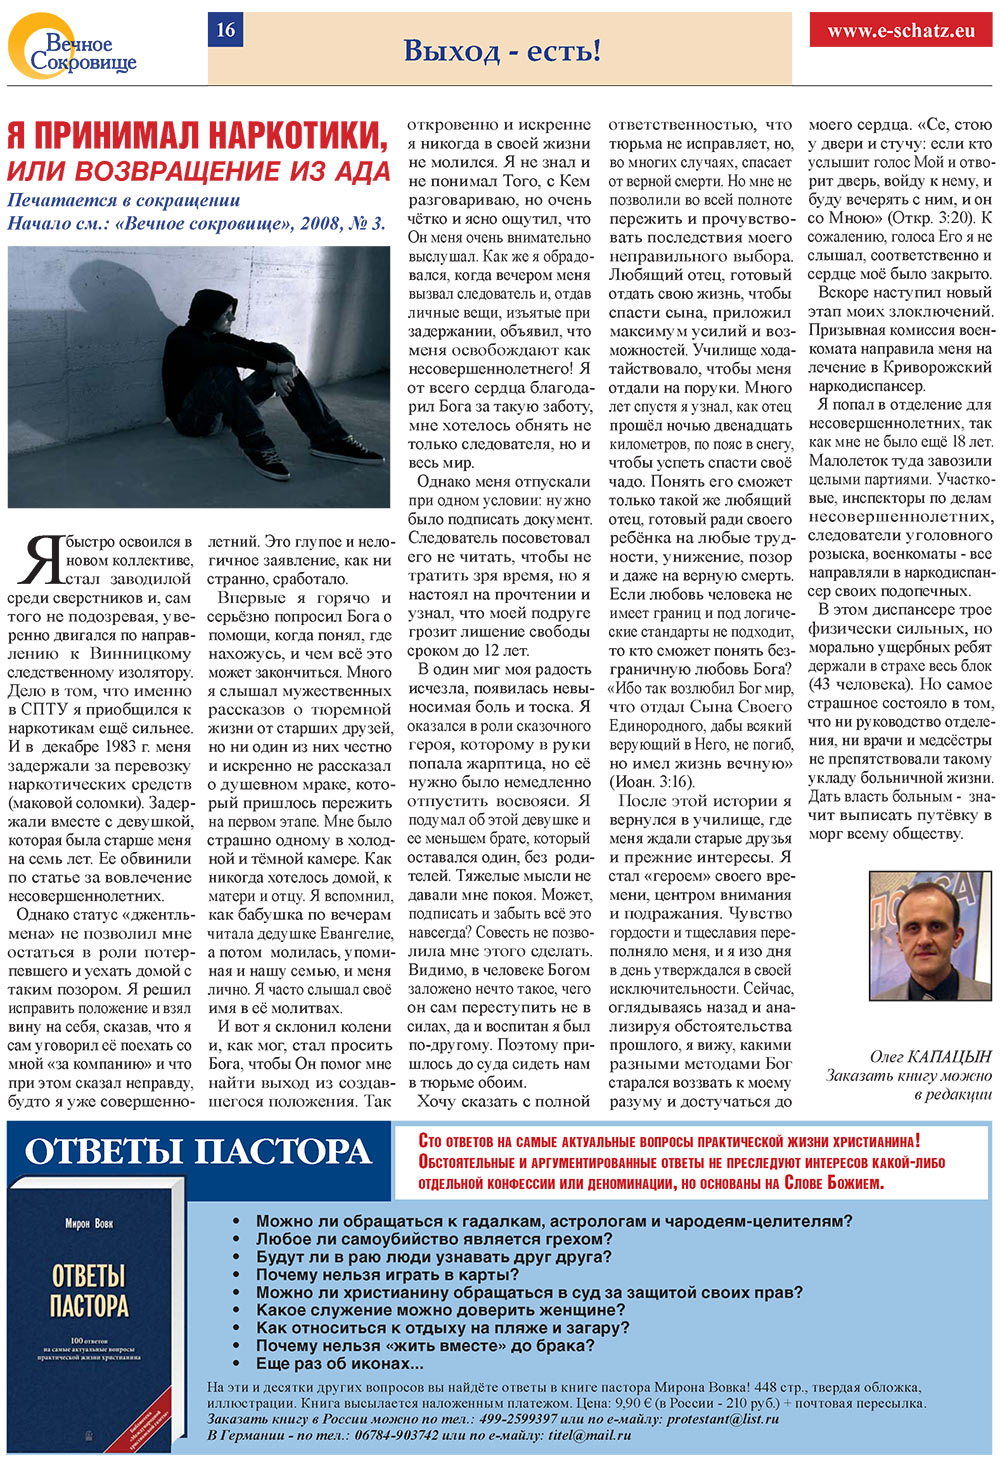 Вечное сокровище (газета). 2008 год, номер 4, стр. 16